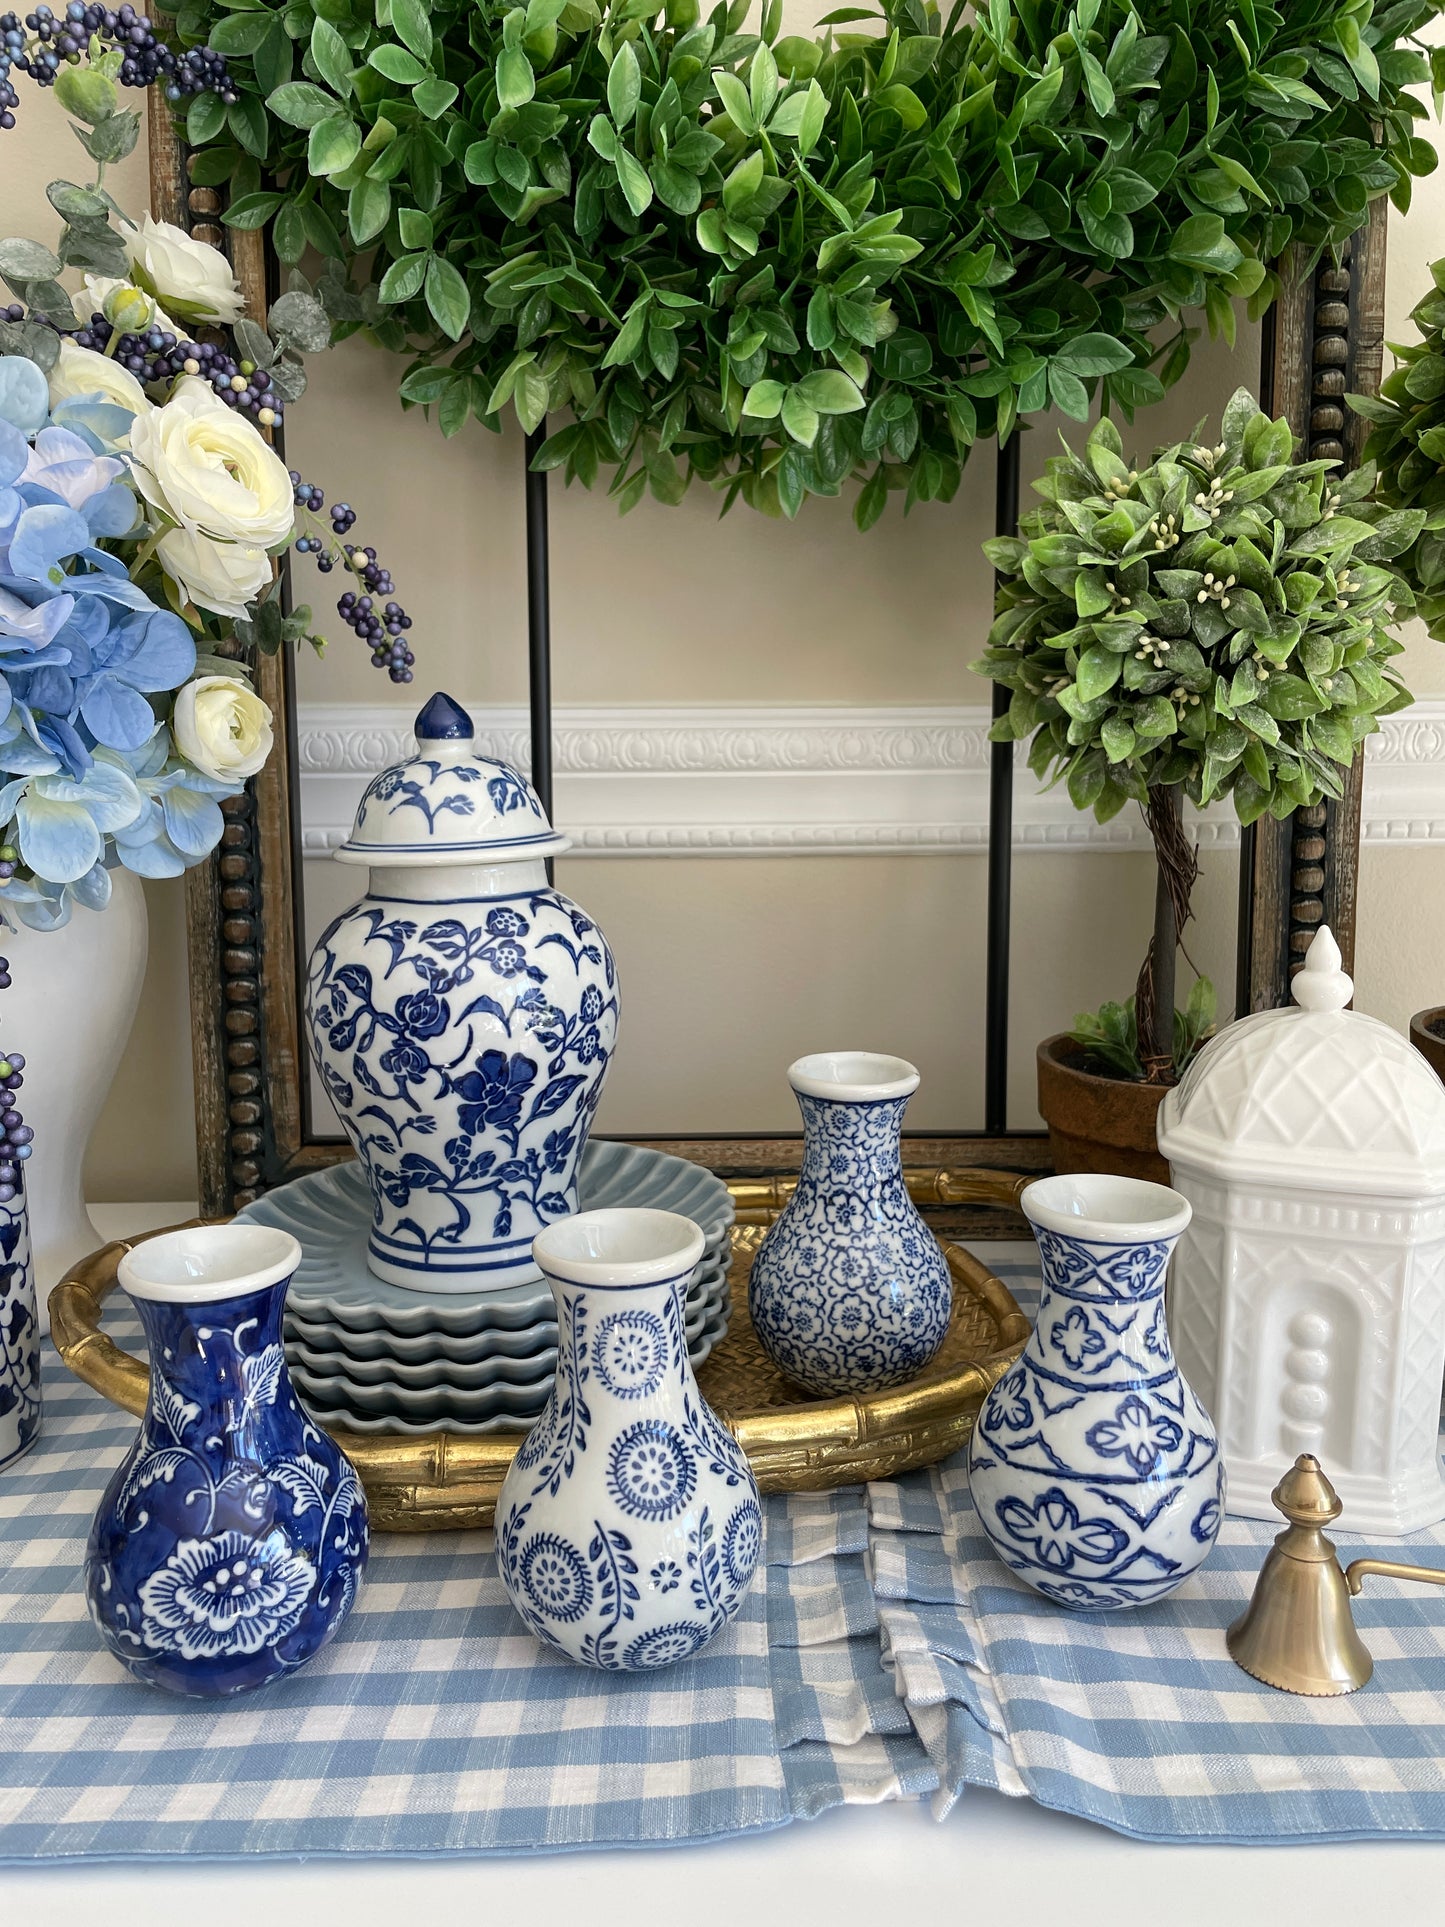 Blue and White Bud Vase, Set of 4